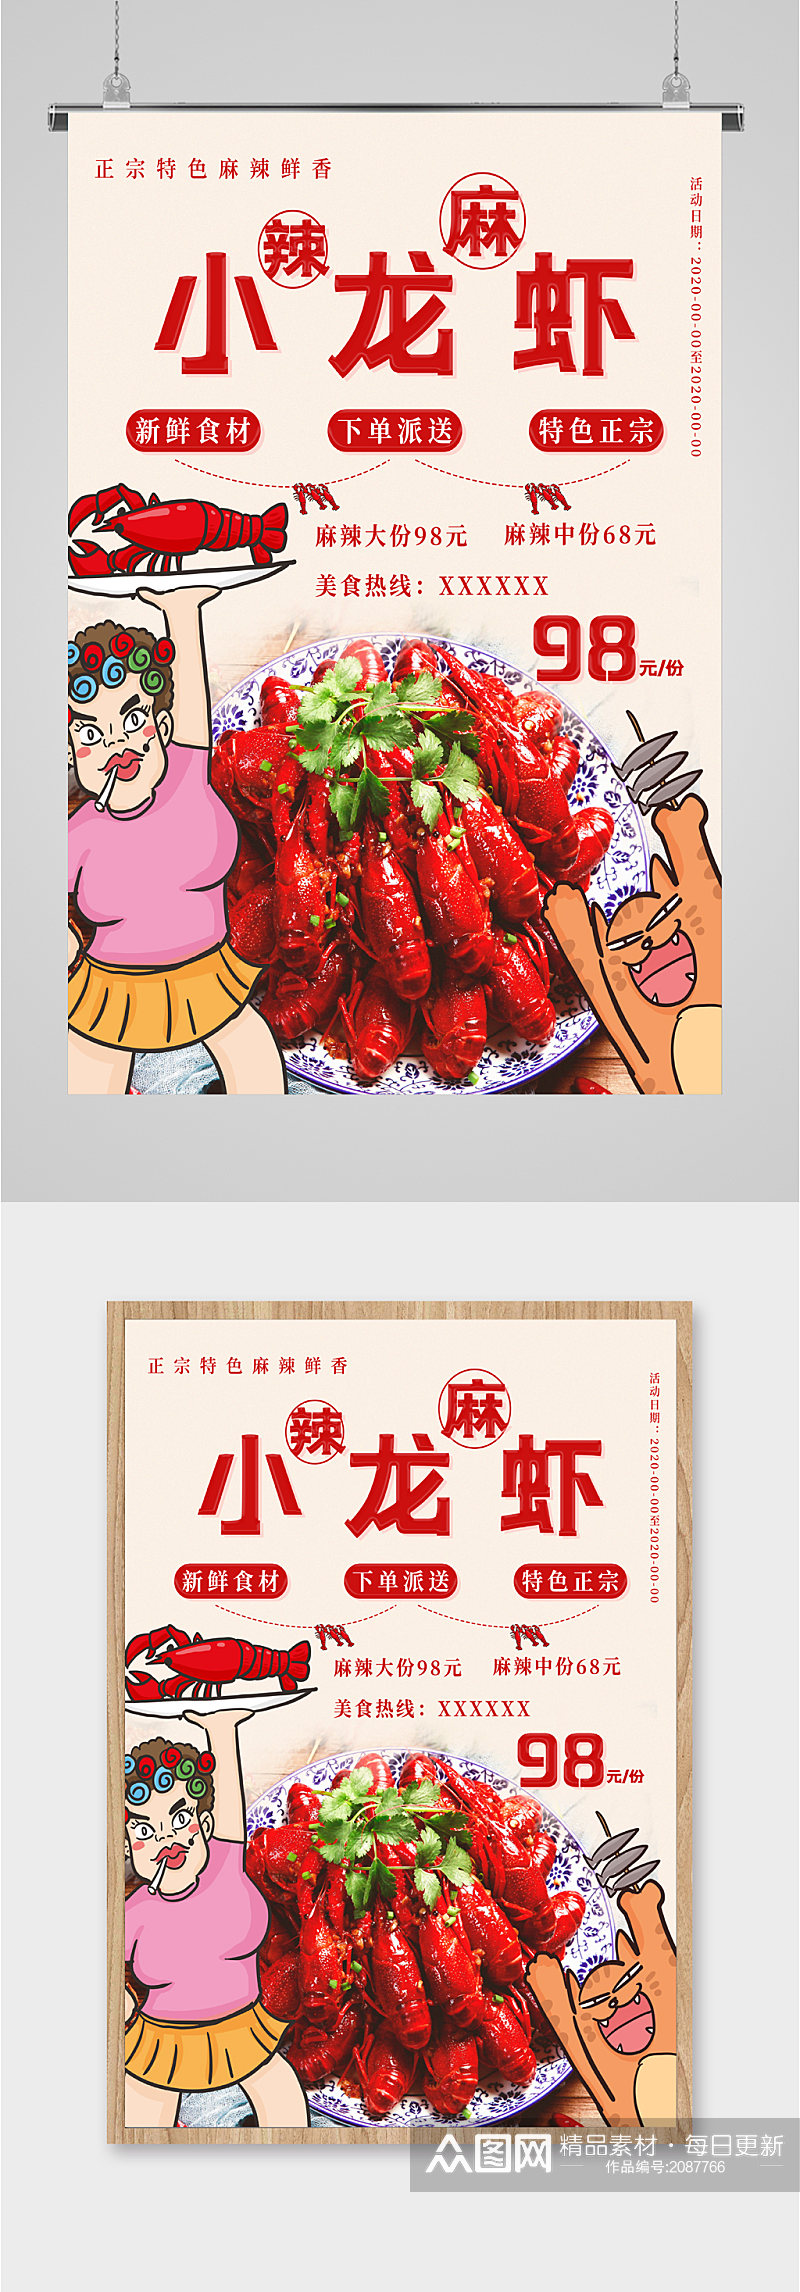 麻辣小龙虾低价促销海报素材